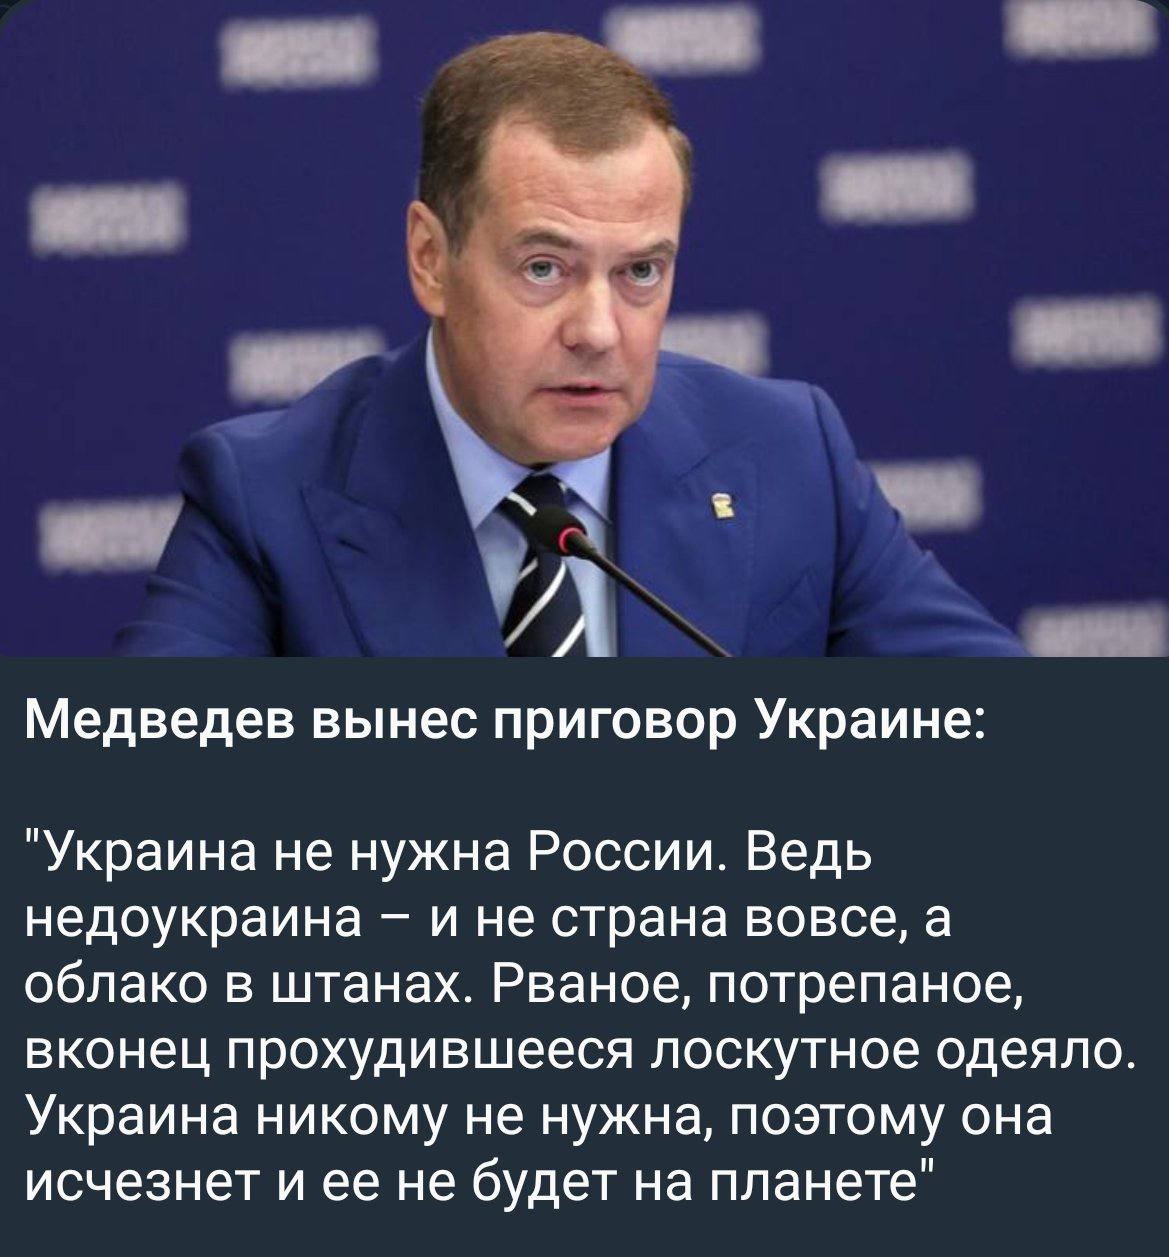 Политолог Дудаков: решение Илона Маска отказаться удалять пост Медведева в Twitter не нарушает санкции